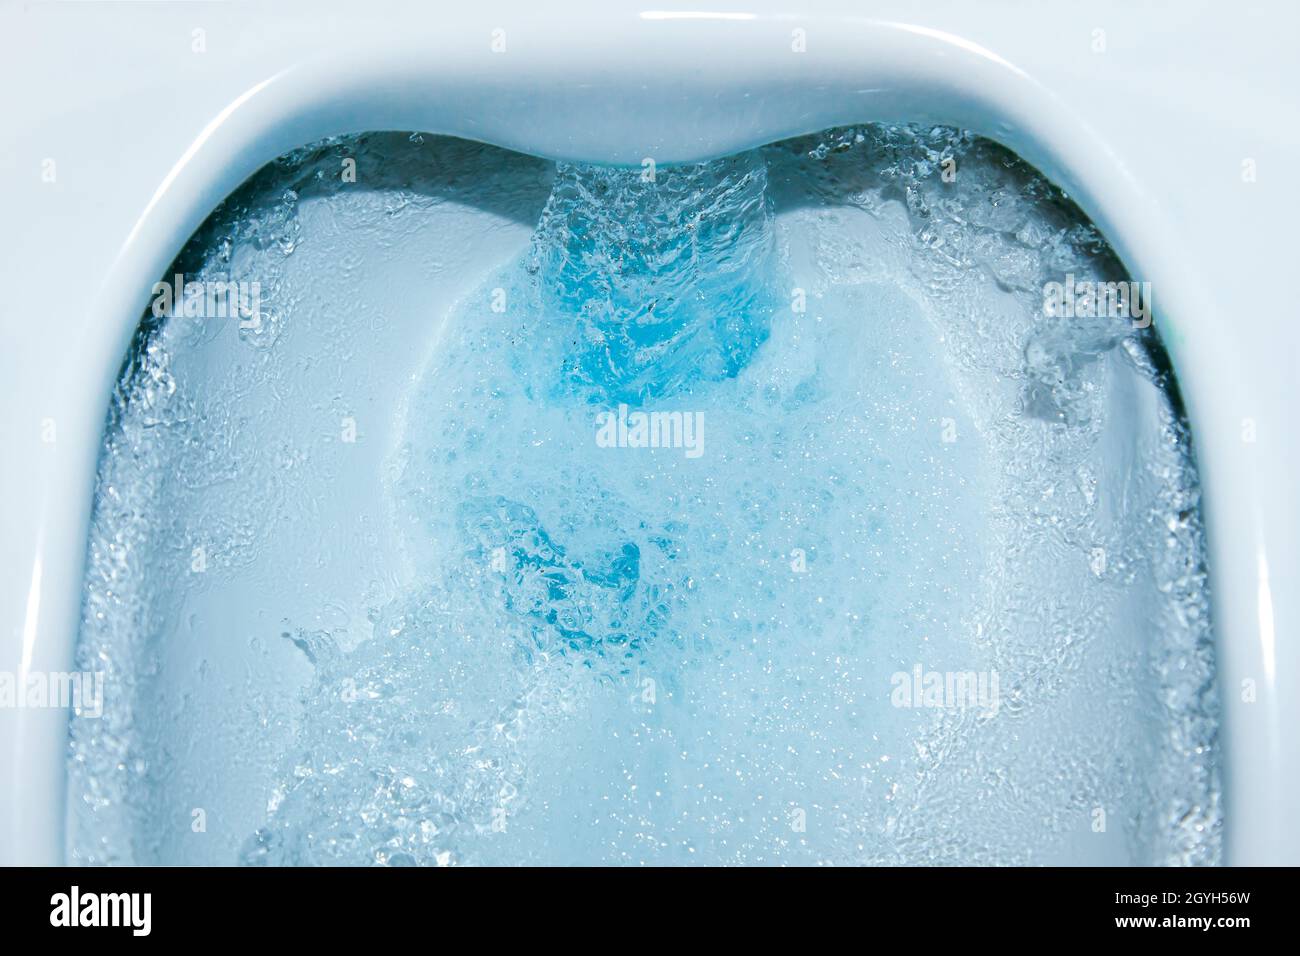 Wasser läuft im Abfluss nach unten. Toilettenschüssel spülen mit blauer  Reinigungsflüssigkeit. Reinigung Toilette Nahaufnahme. Umweltverschmutzung  und Wassersparkonzept Stockfotografie - Alamy